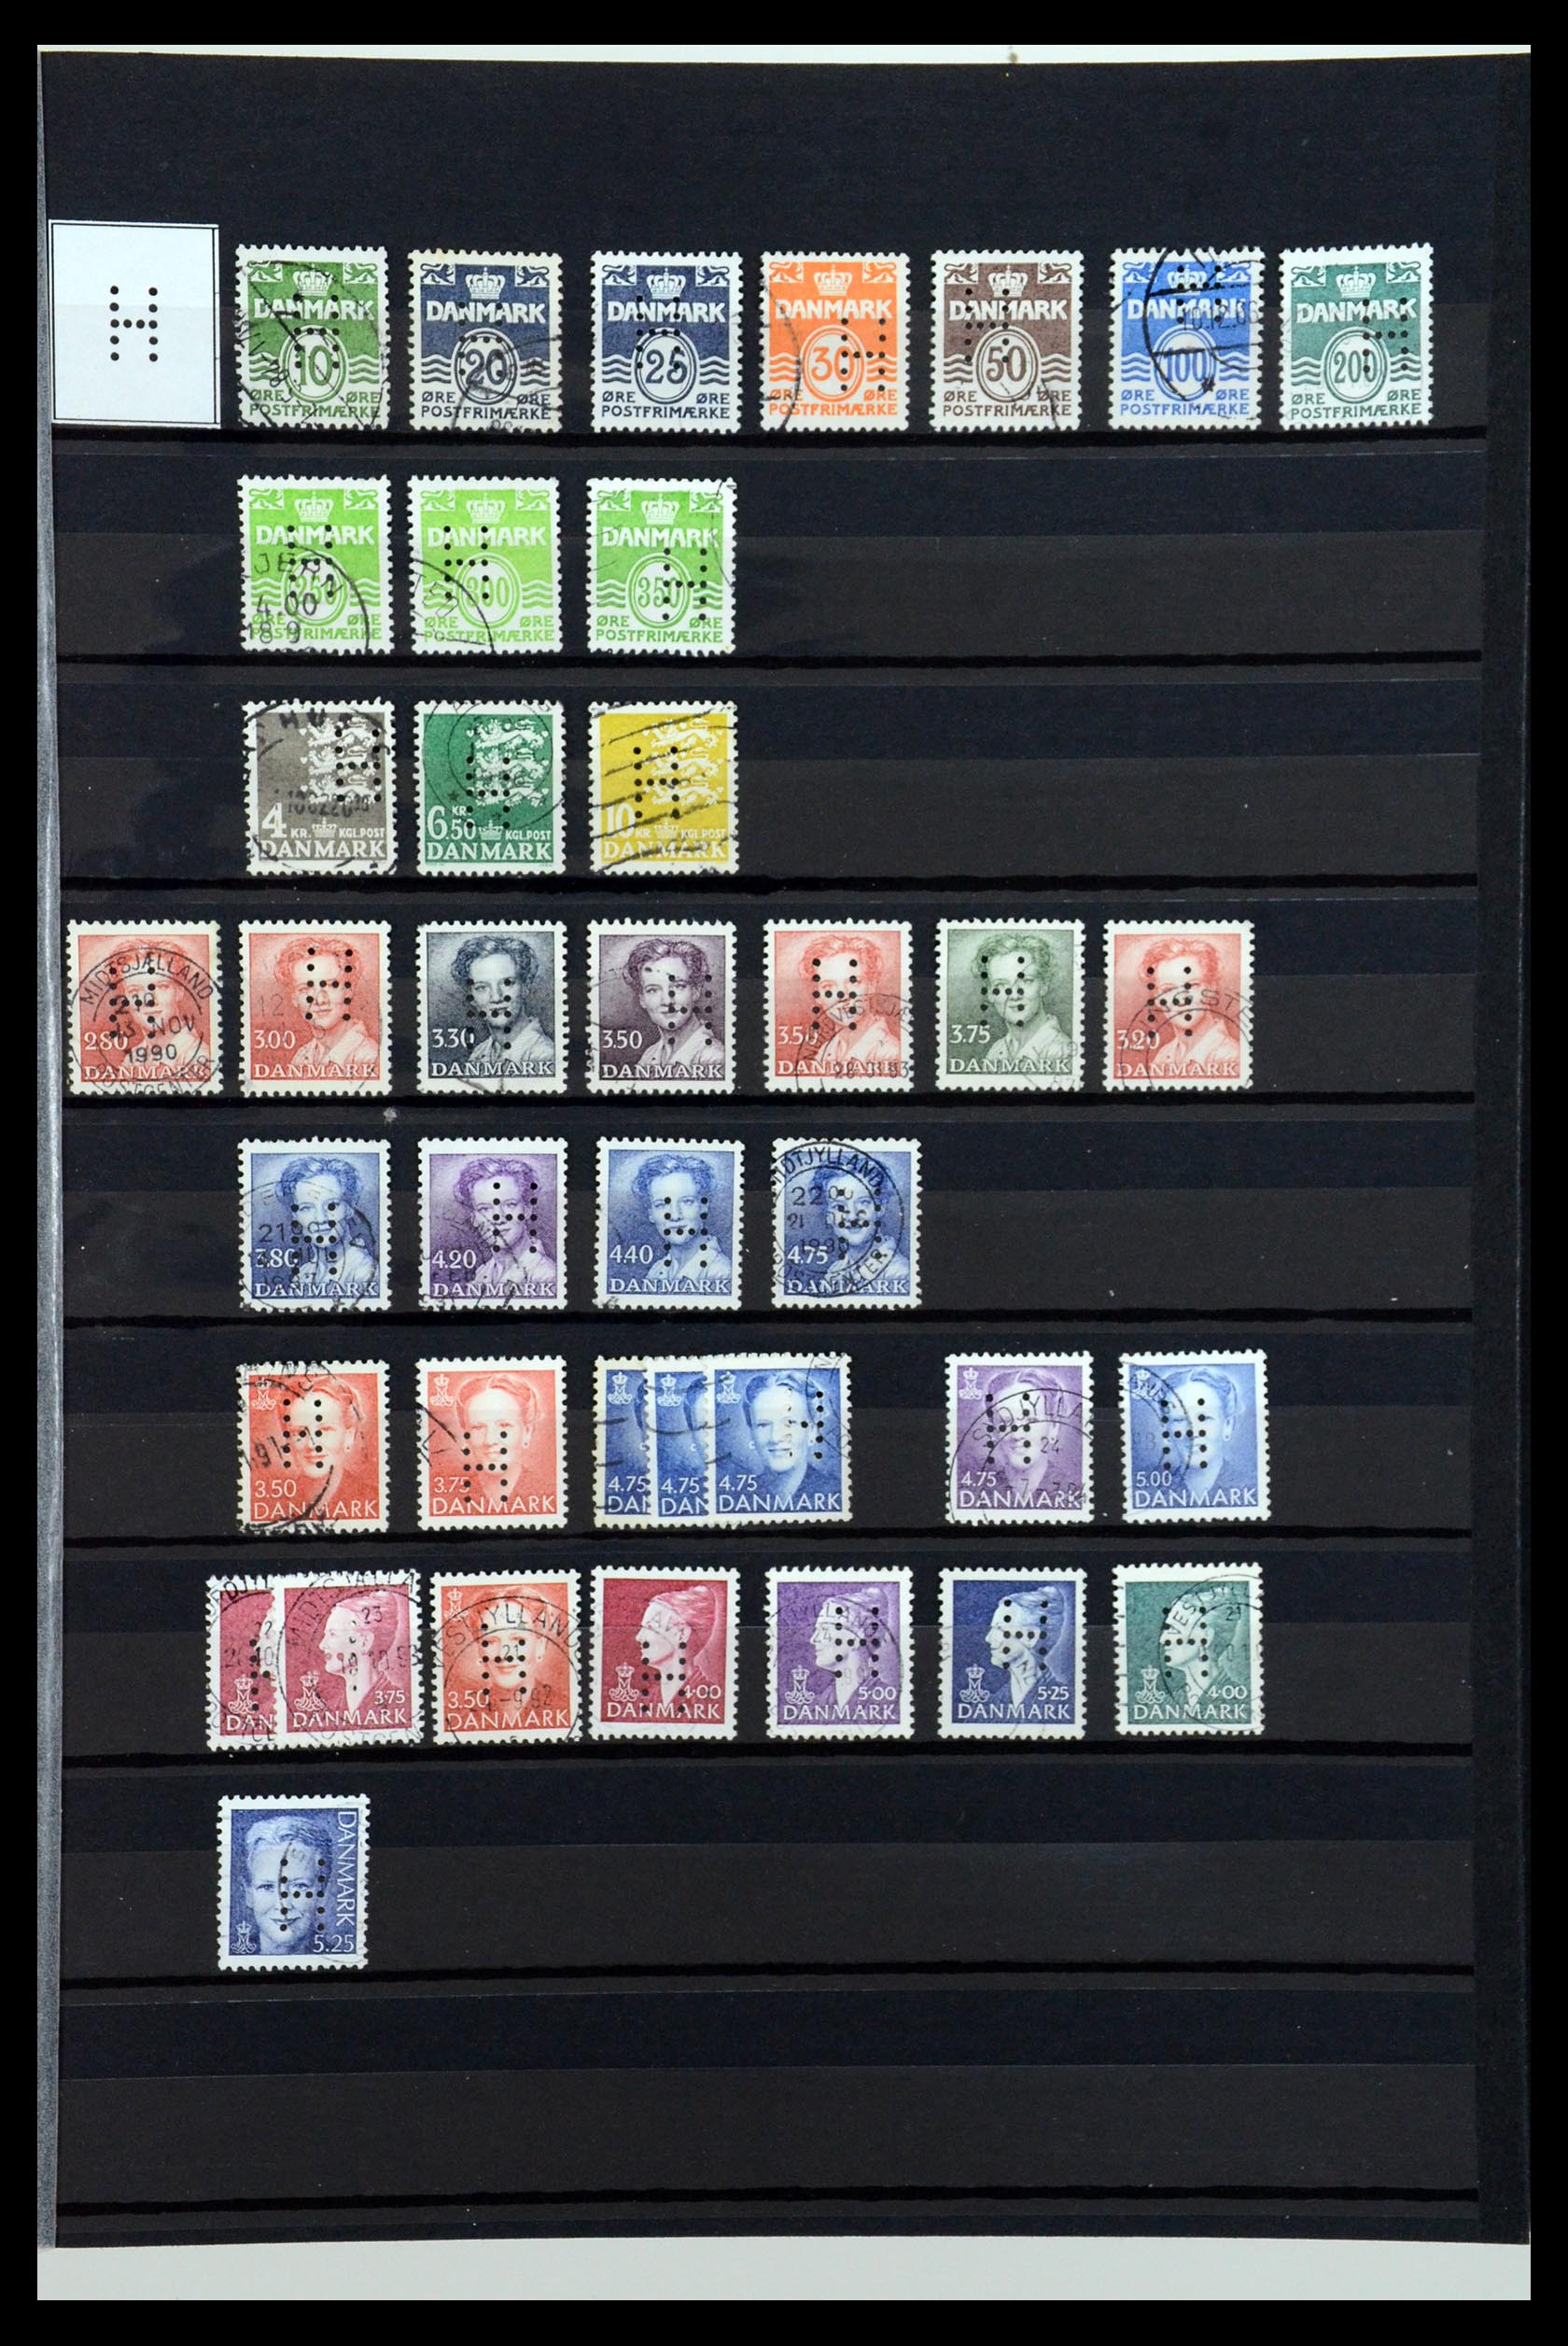 36396 124 - Postzegelverzameling 36396 Denemarken perfins.